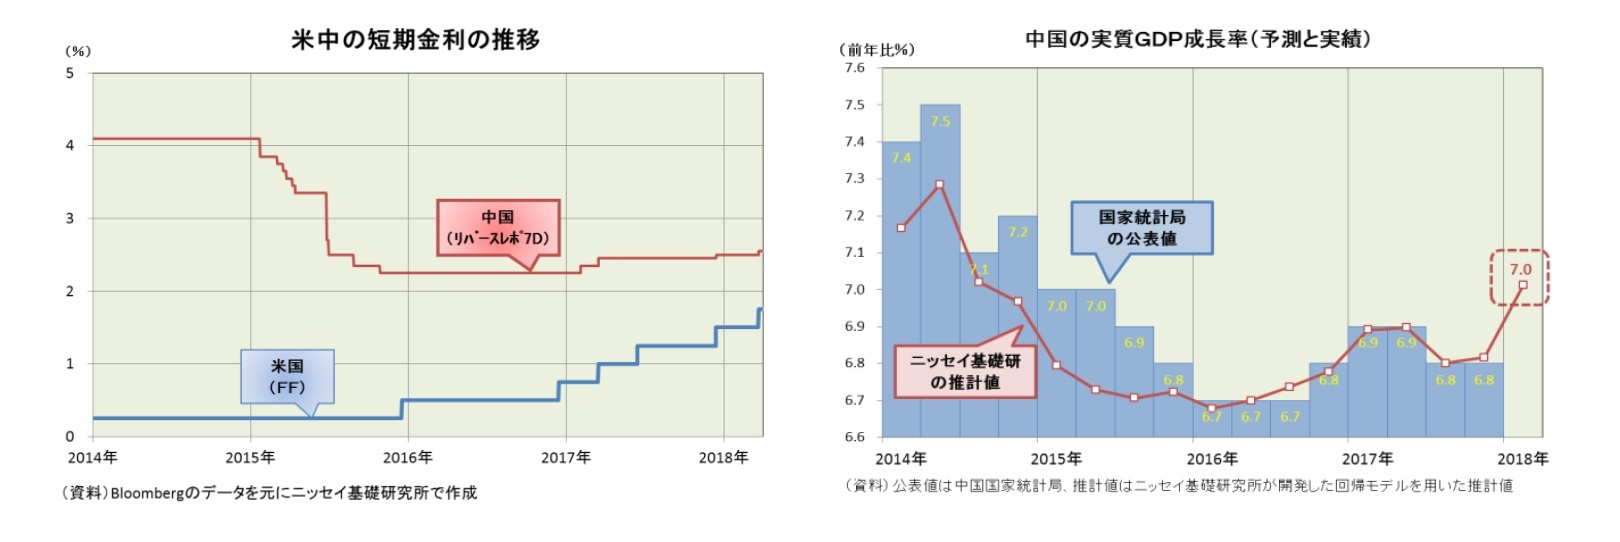 米中の短期金利の推移/中国の実質GDP成長率(予測と実績)